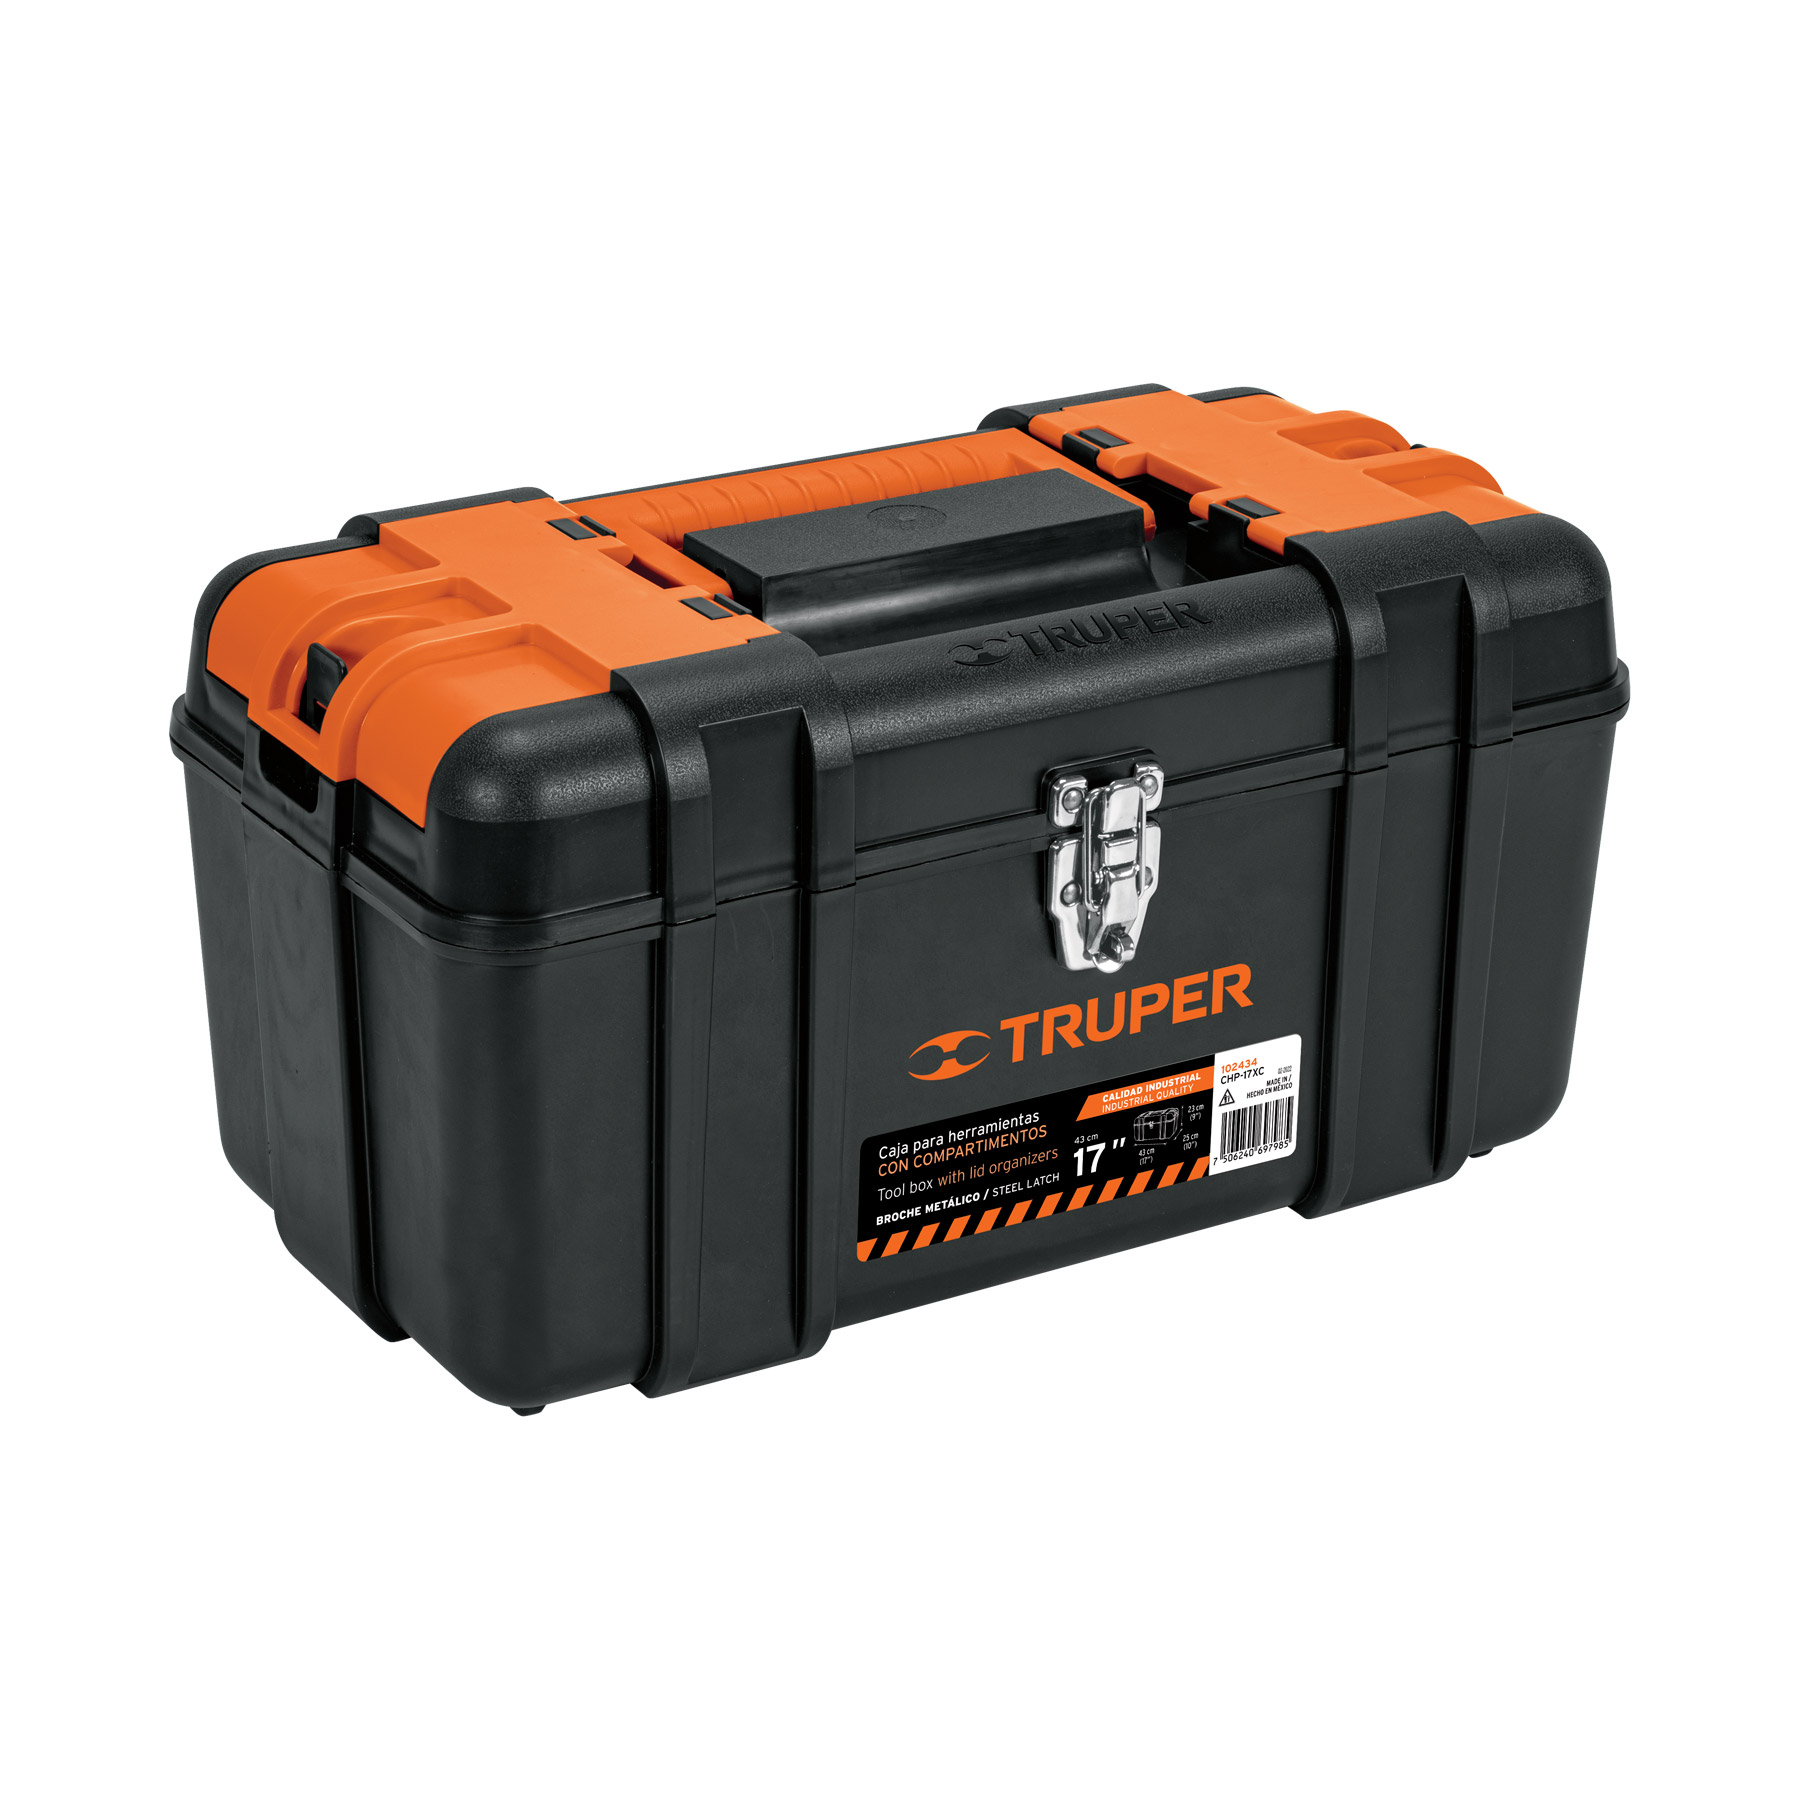 Caja para herramientas con ruedas tool box cajas guardar tools